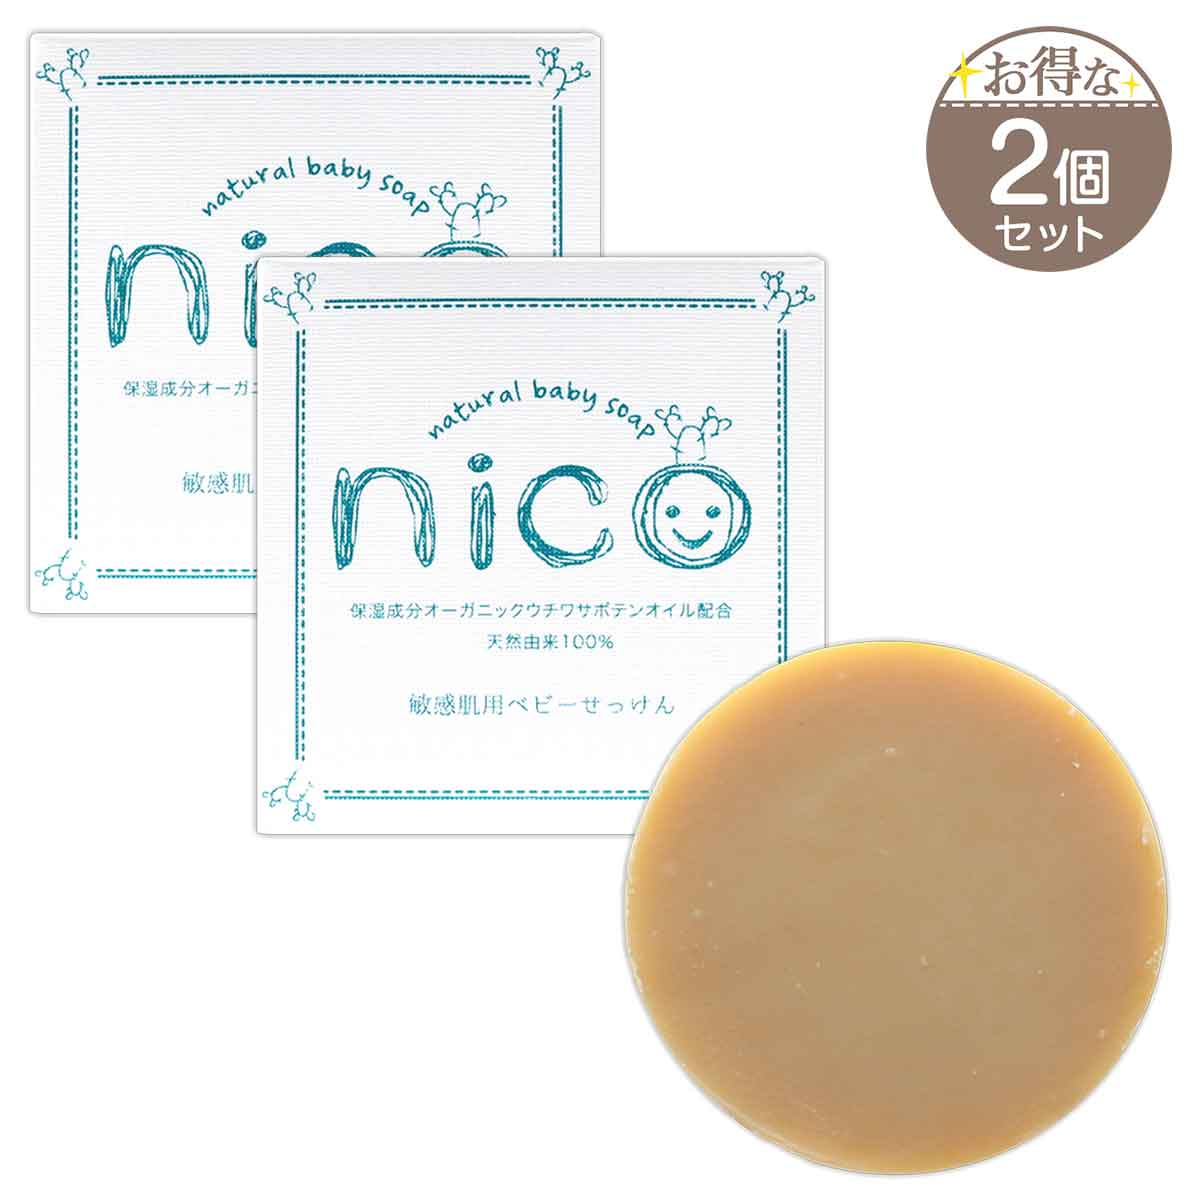 【 2個セット 】 nico石鹸 ニコ石鹸 にこせっけん 敏感肌 用 50g ...